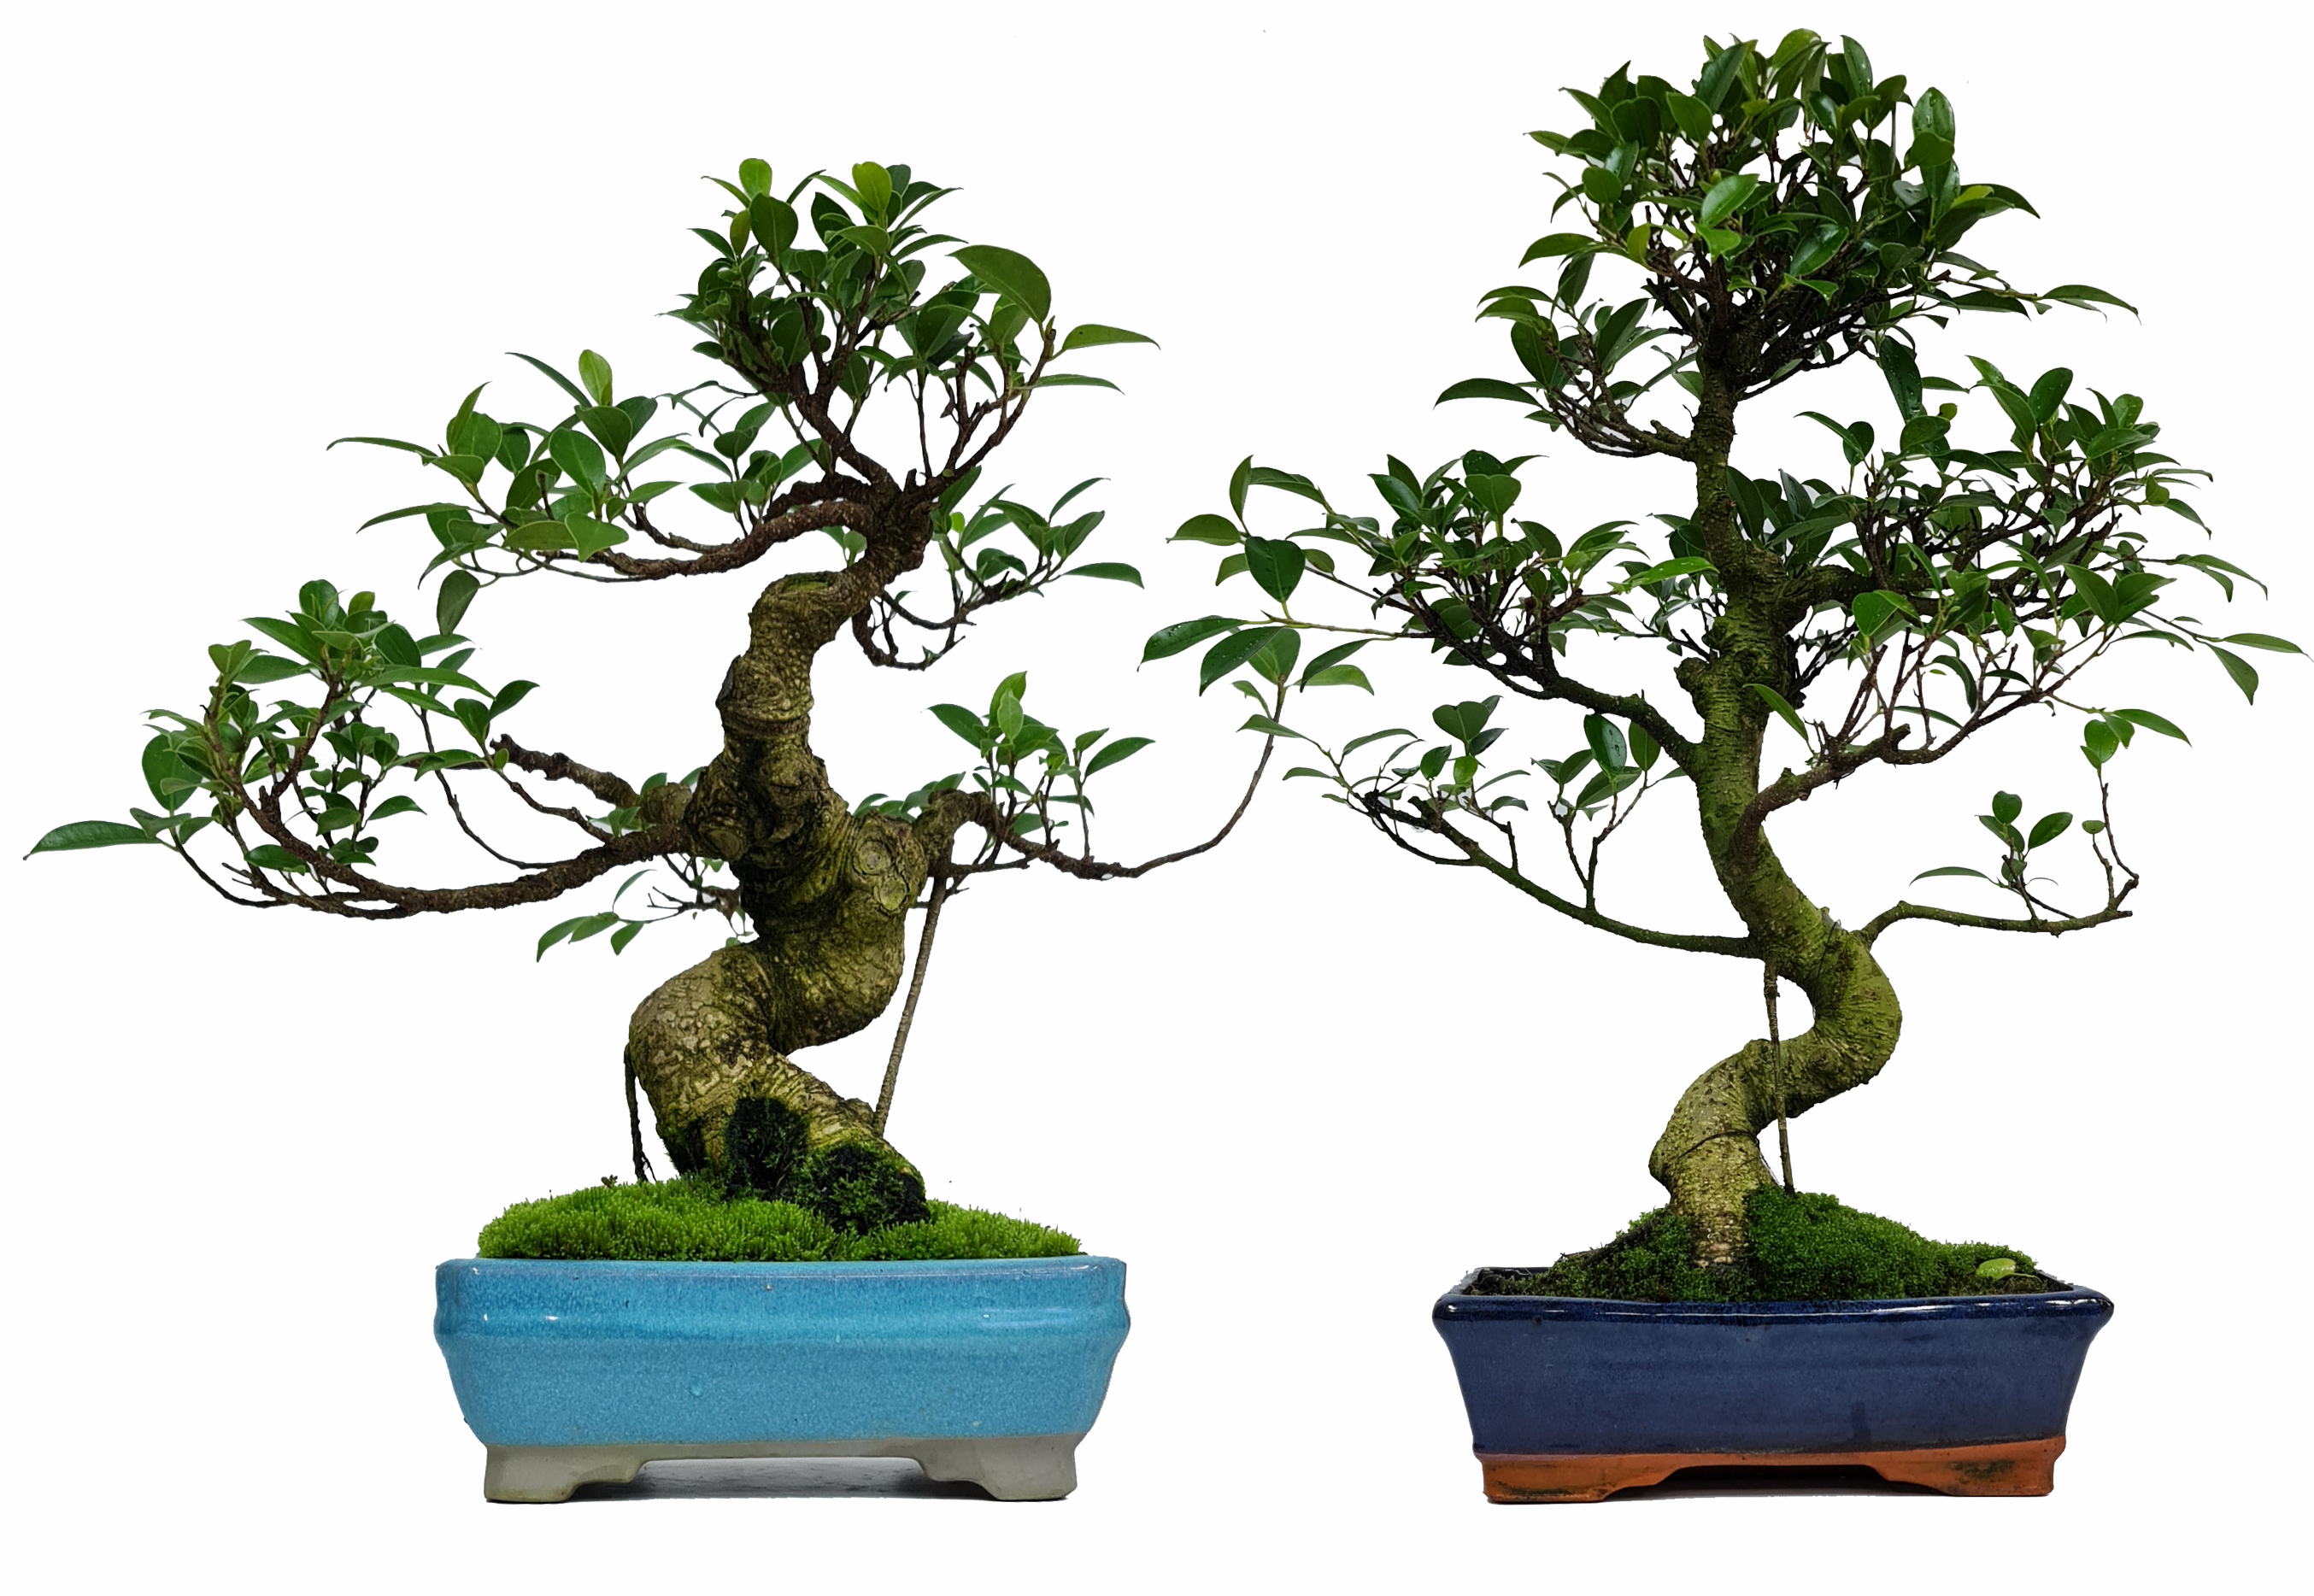 Ficus retusa